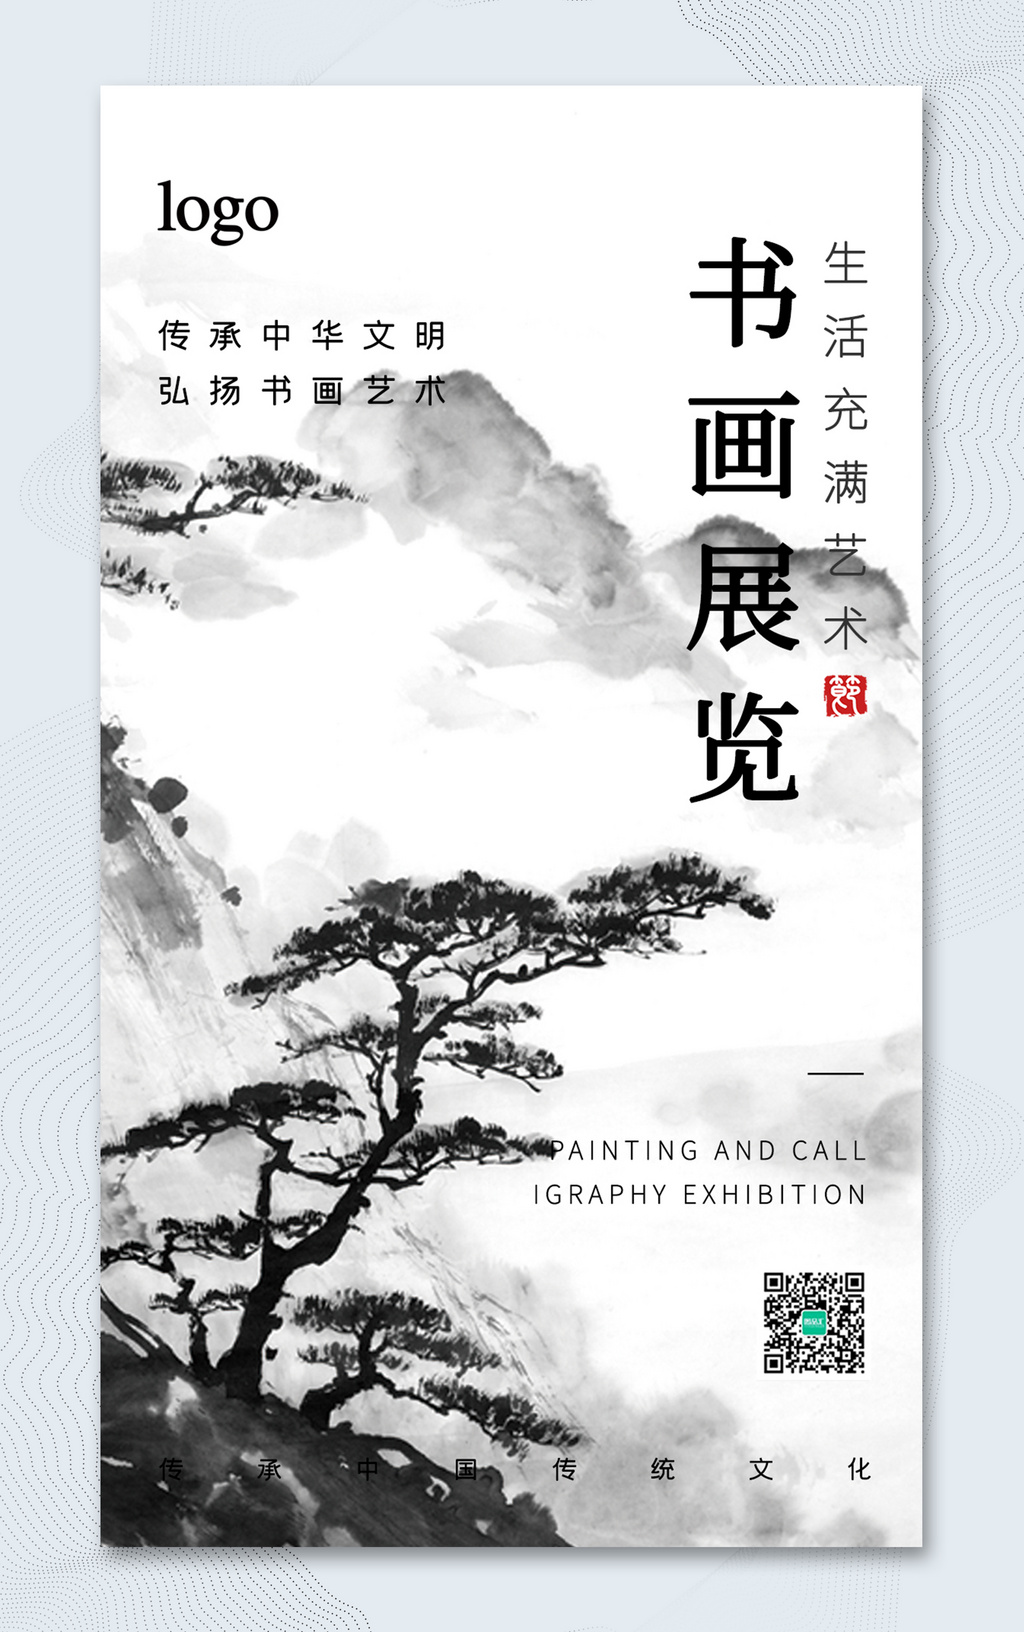 中式书画展览宣传海报